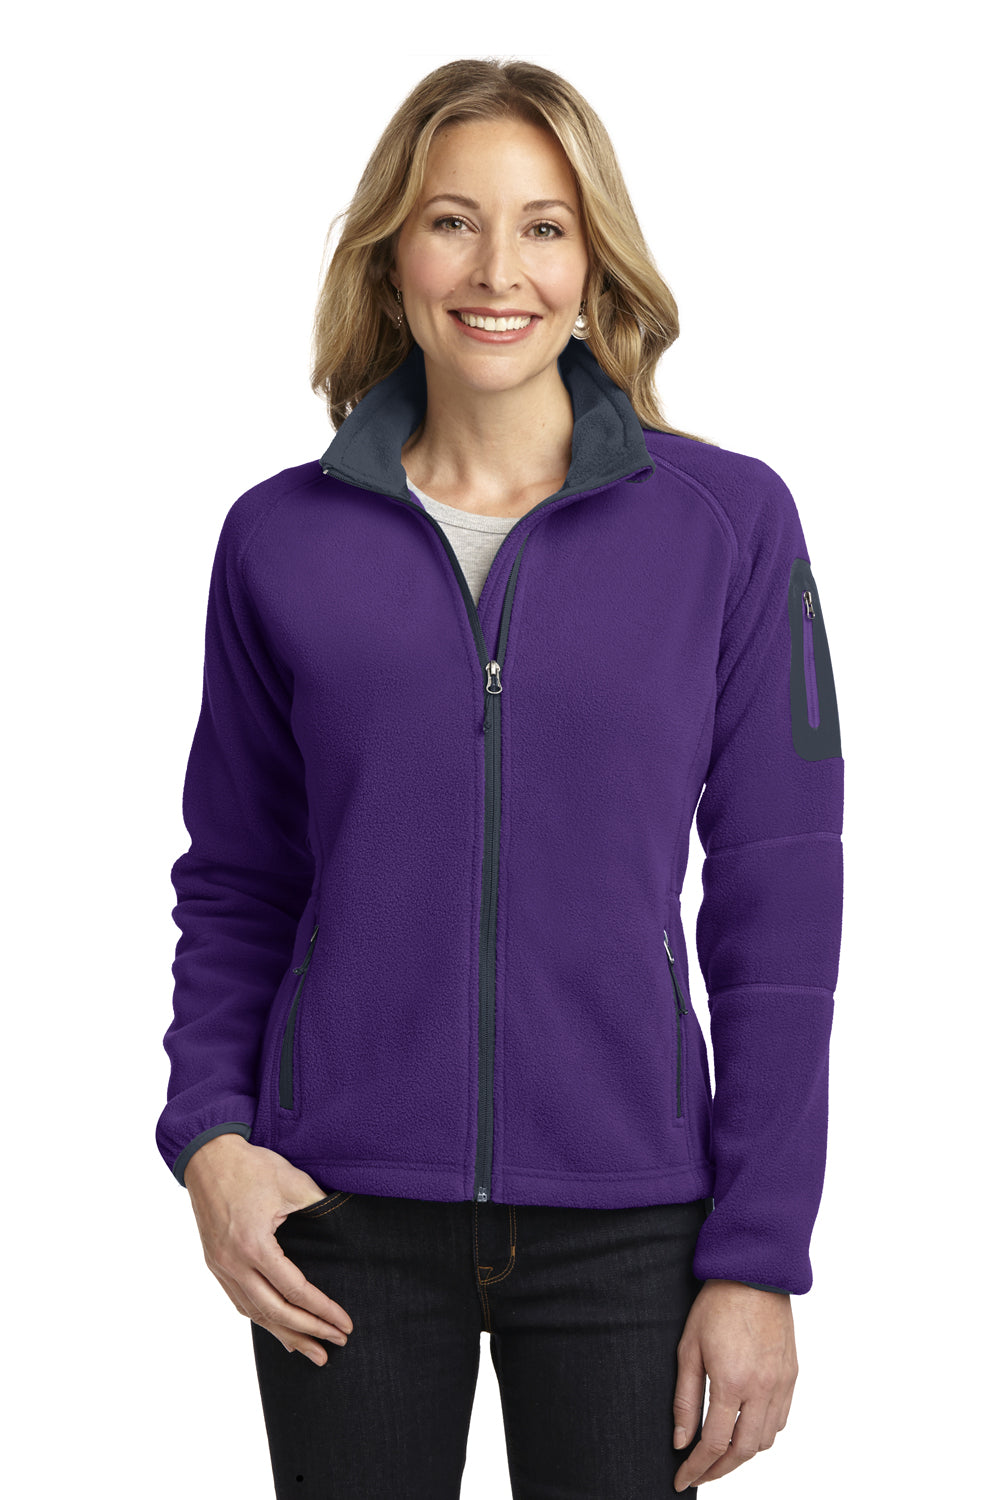 Port Authority L229 Womens Full Zip Fleece Jacket Purple/Grey Front